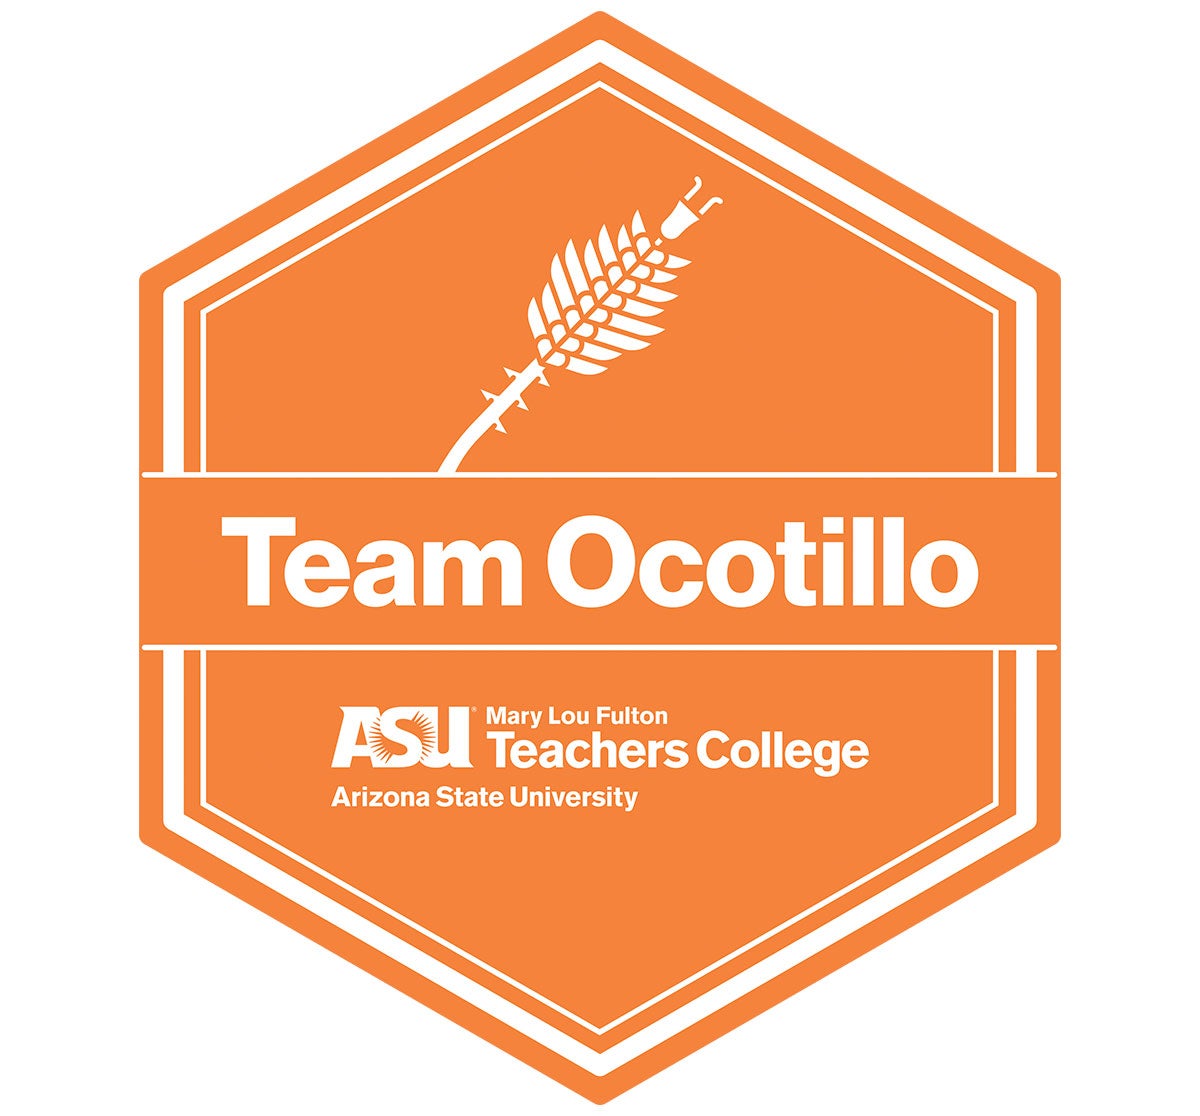 Team Ocotillo